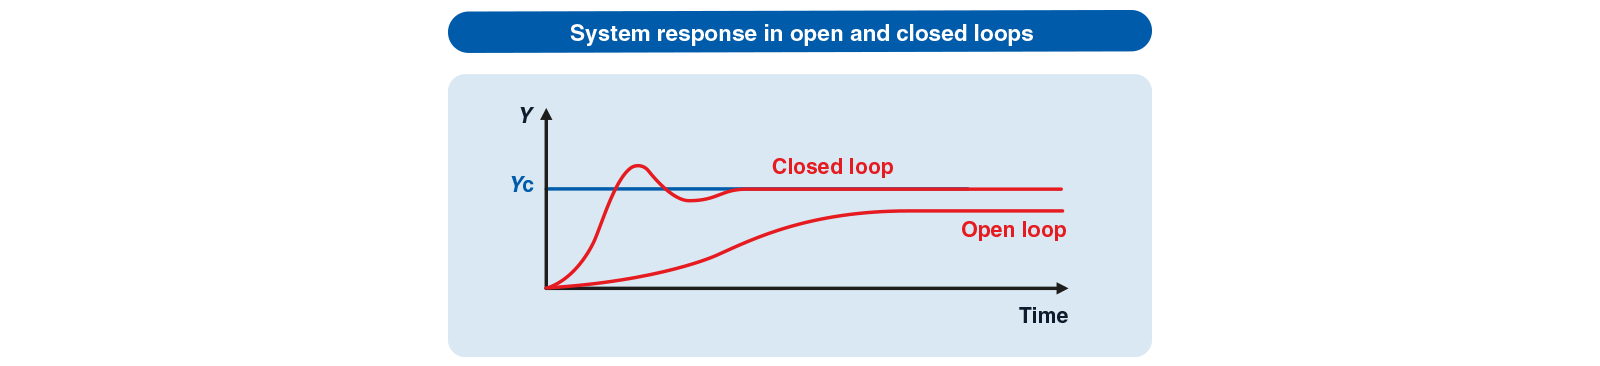 respuesta del sistema en bucle cerrado o abierto es